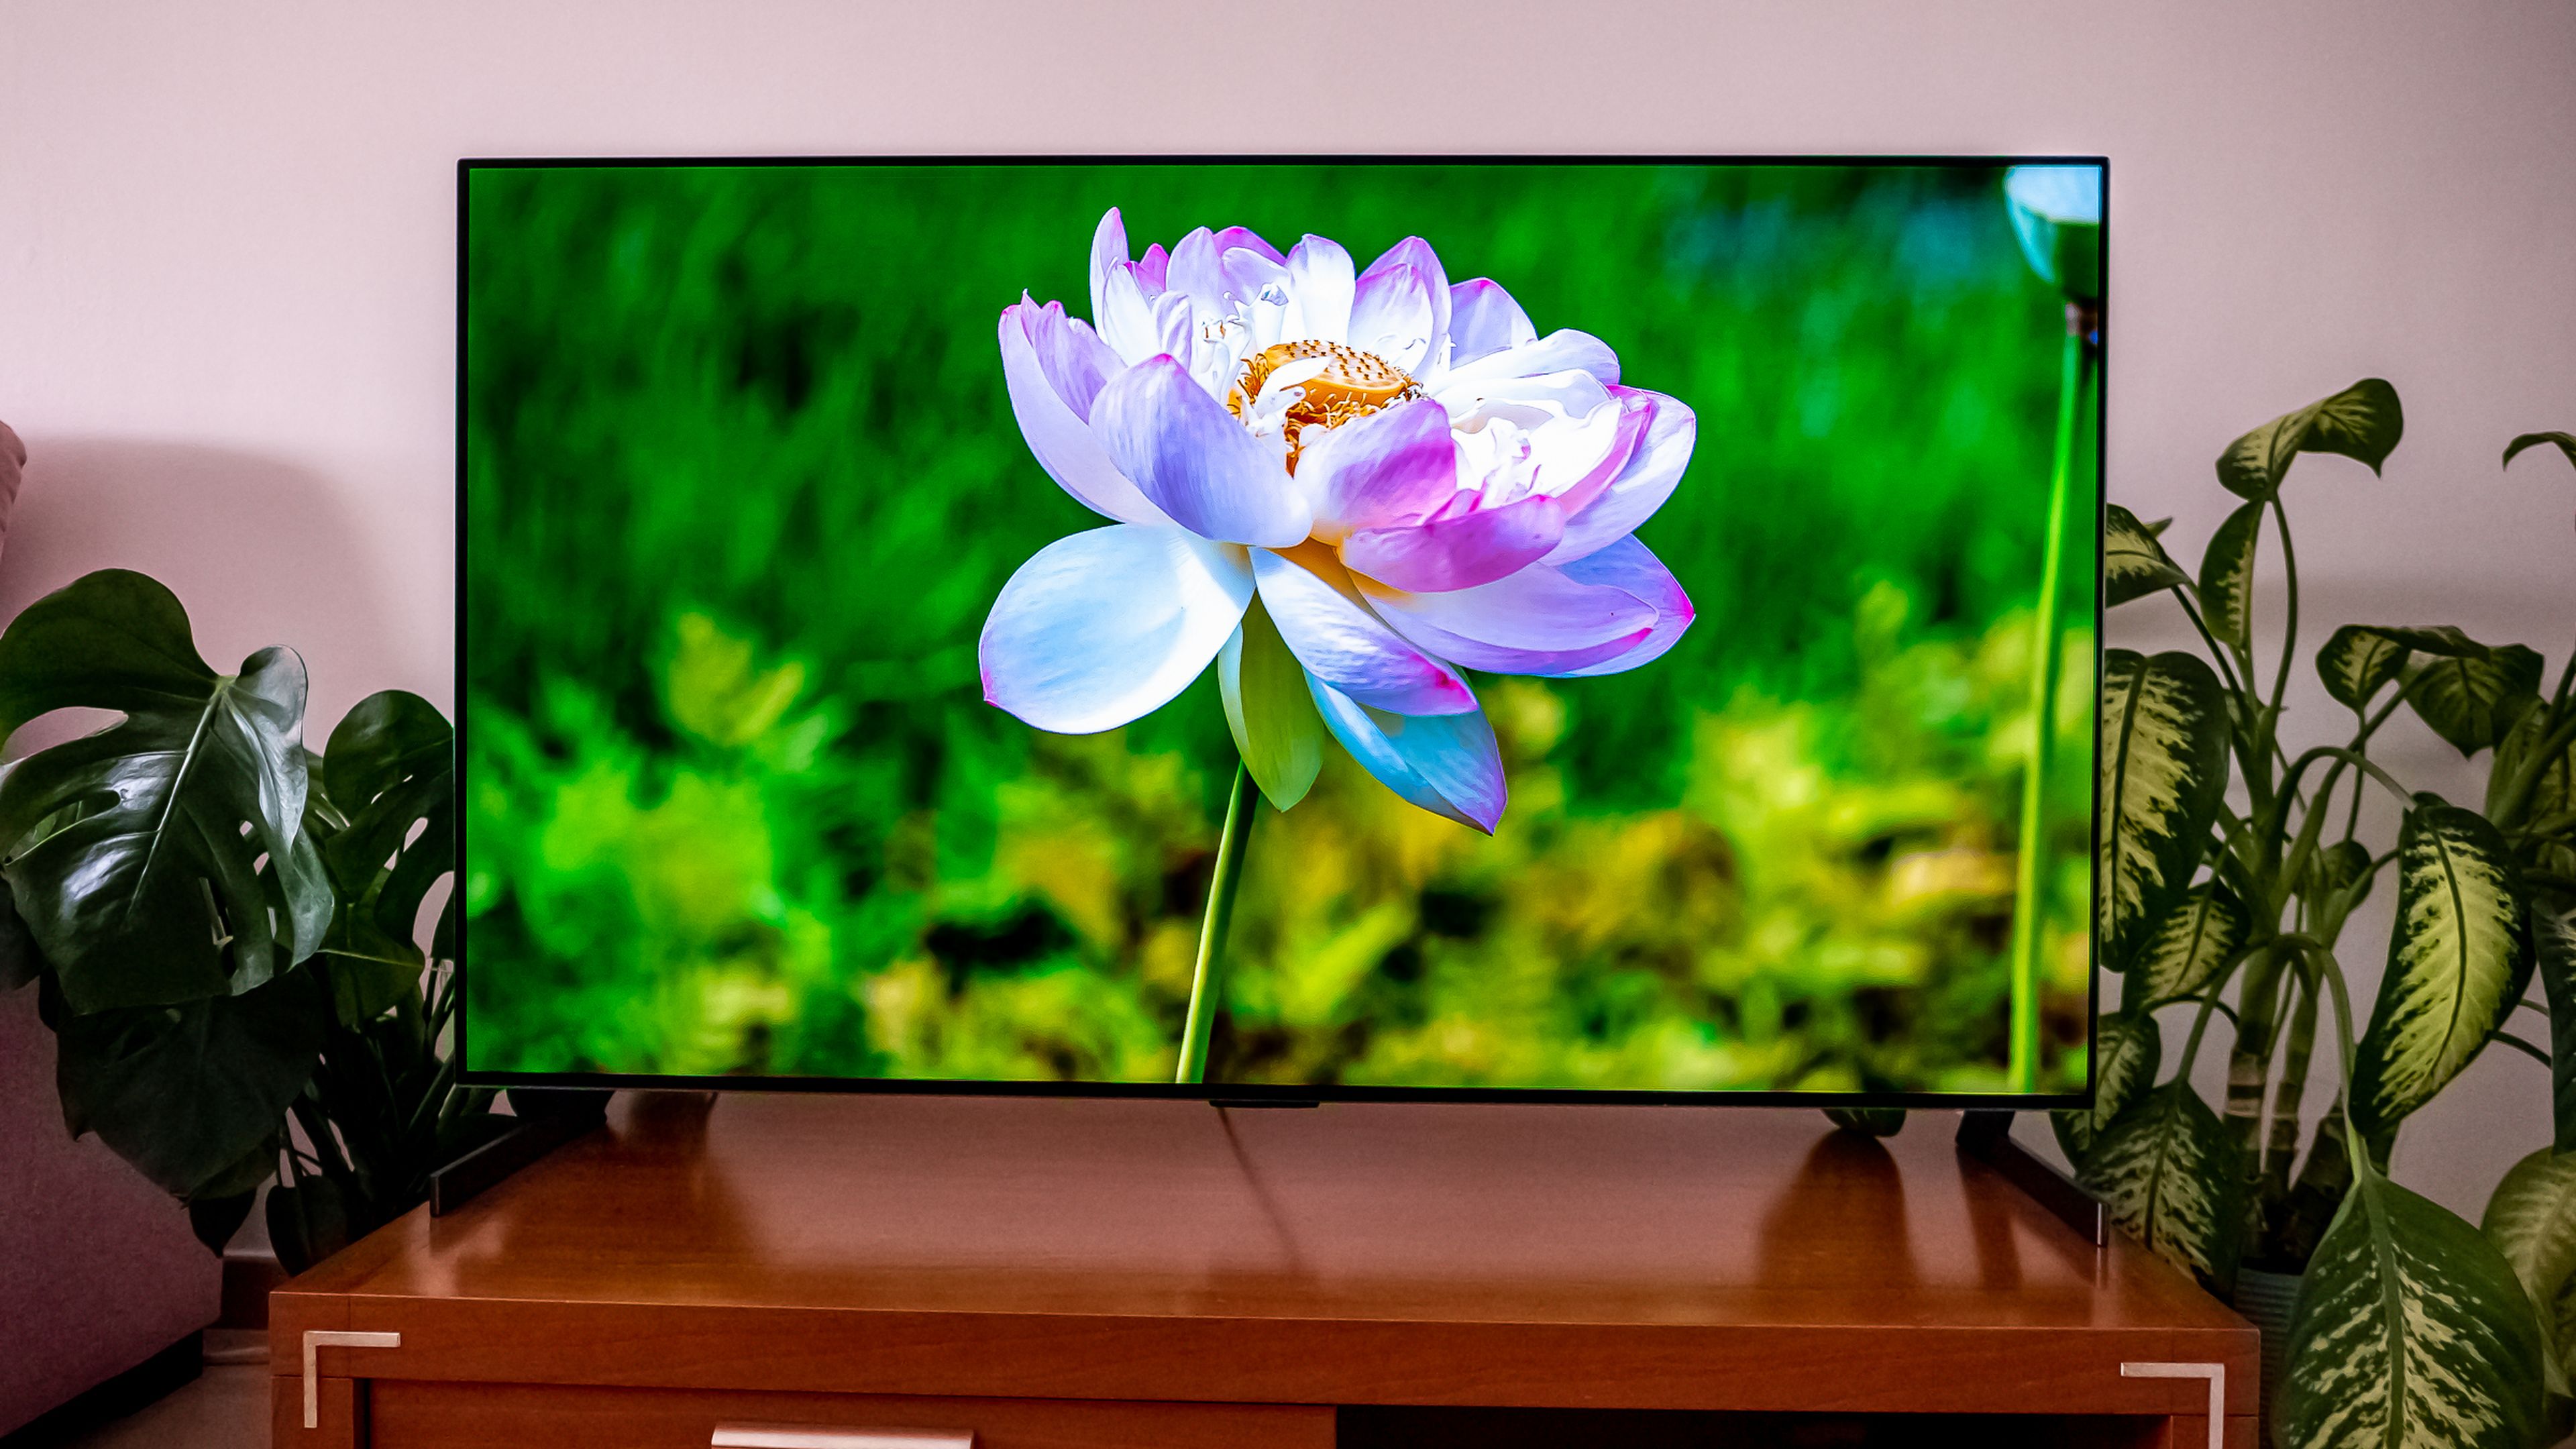 LG OLED GX, un televisor que luce como una obra de arte